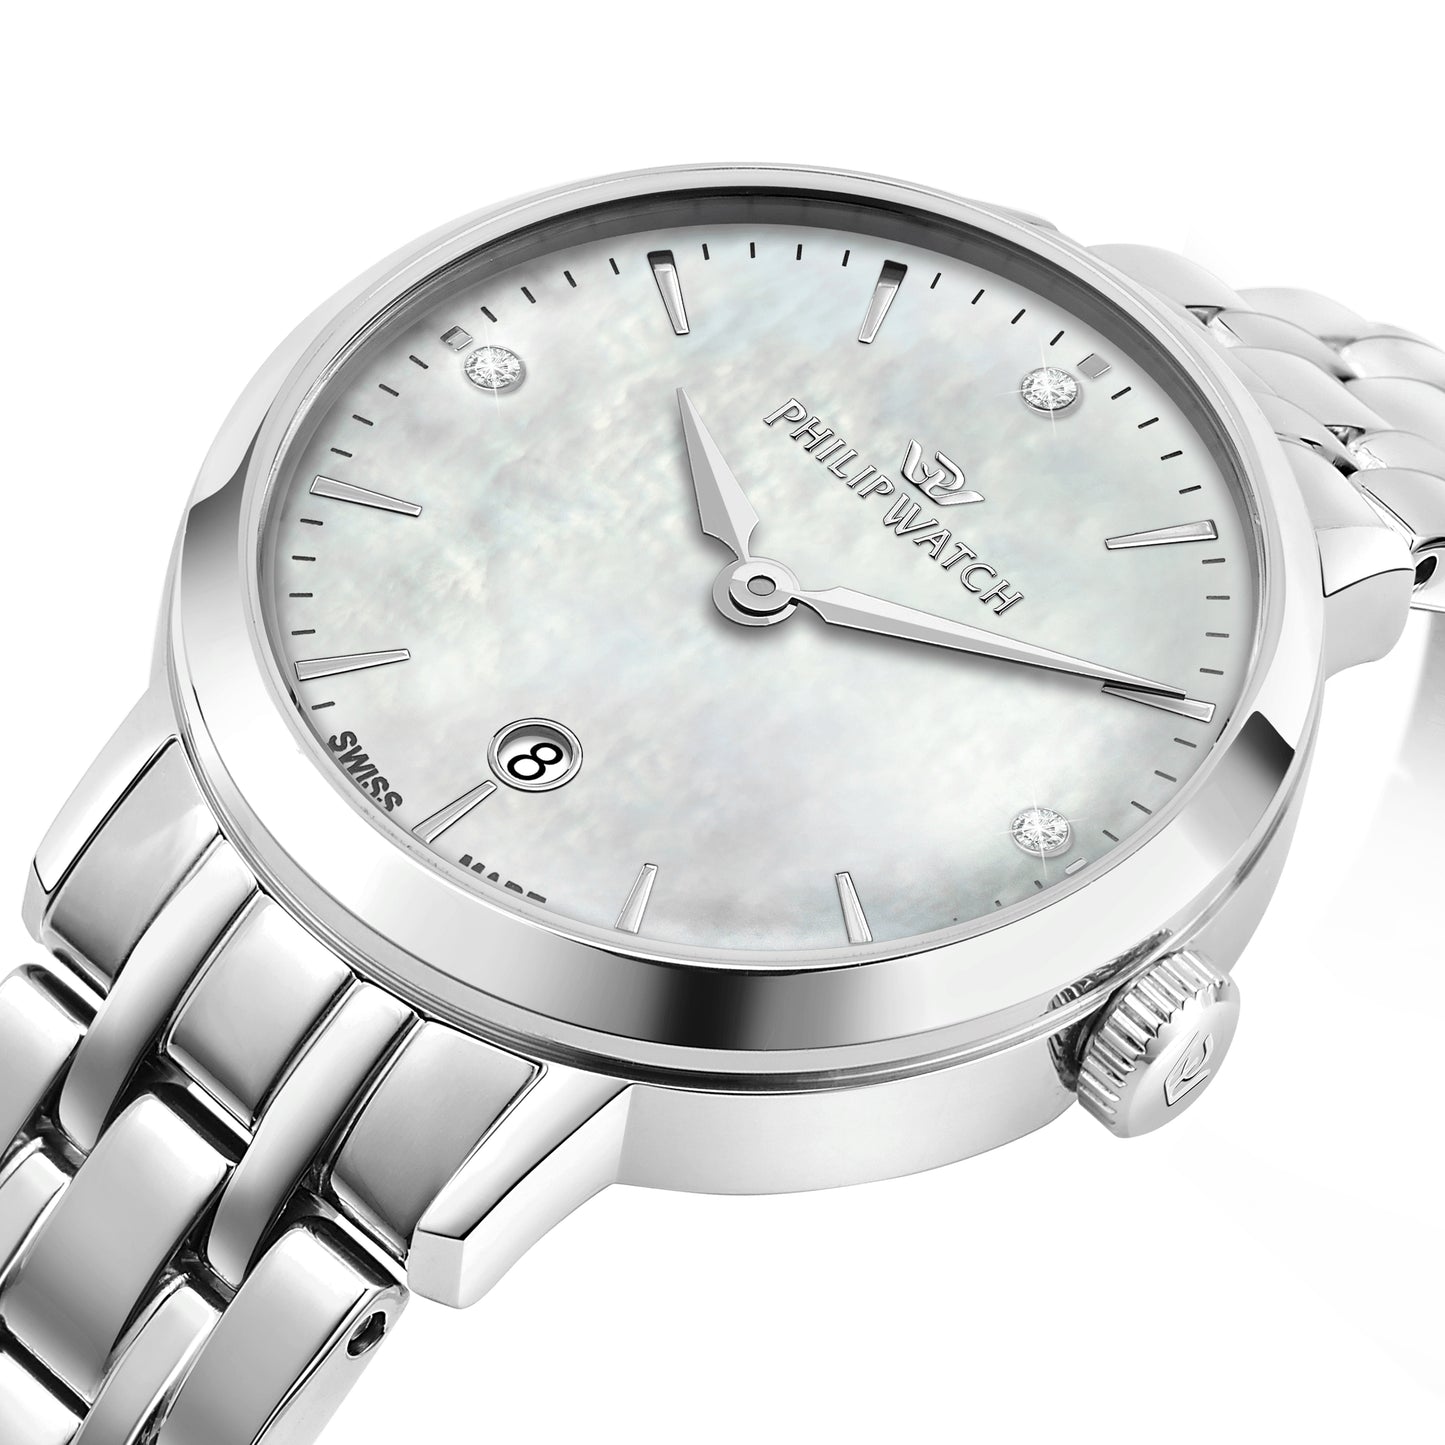 orologio donna philip watch audrey r8253150512